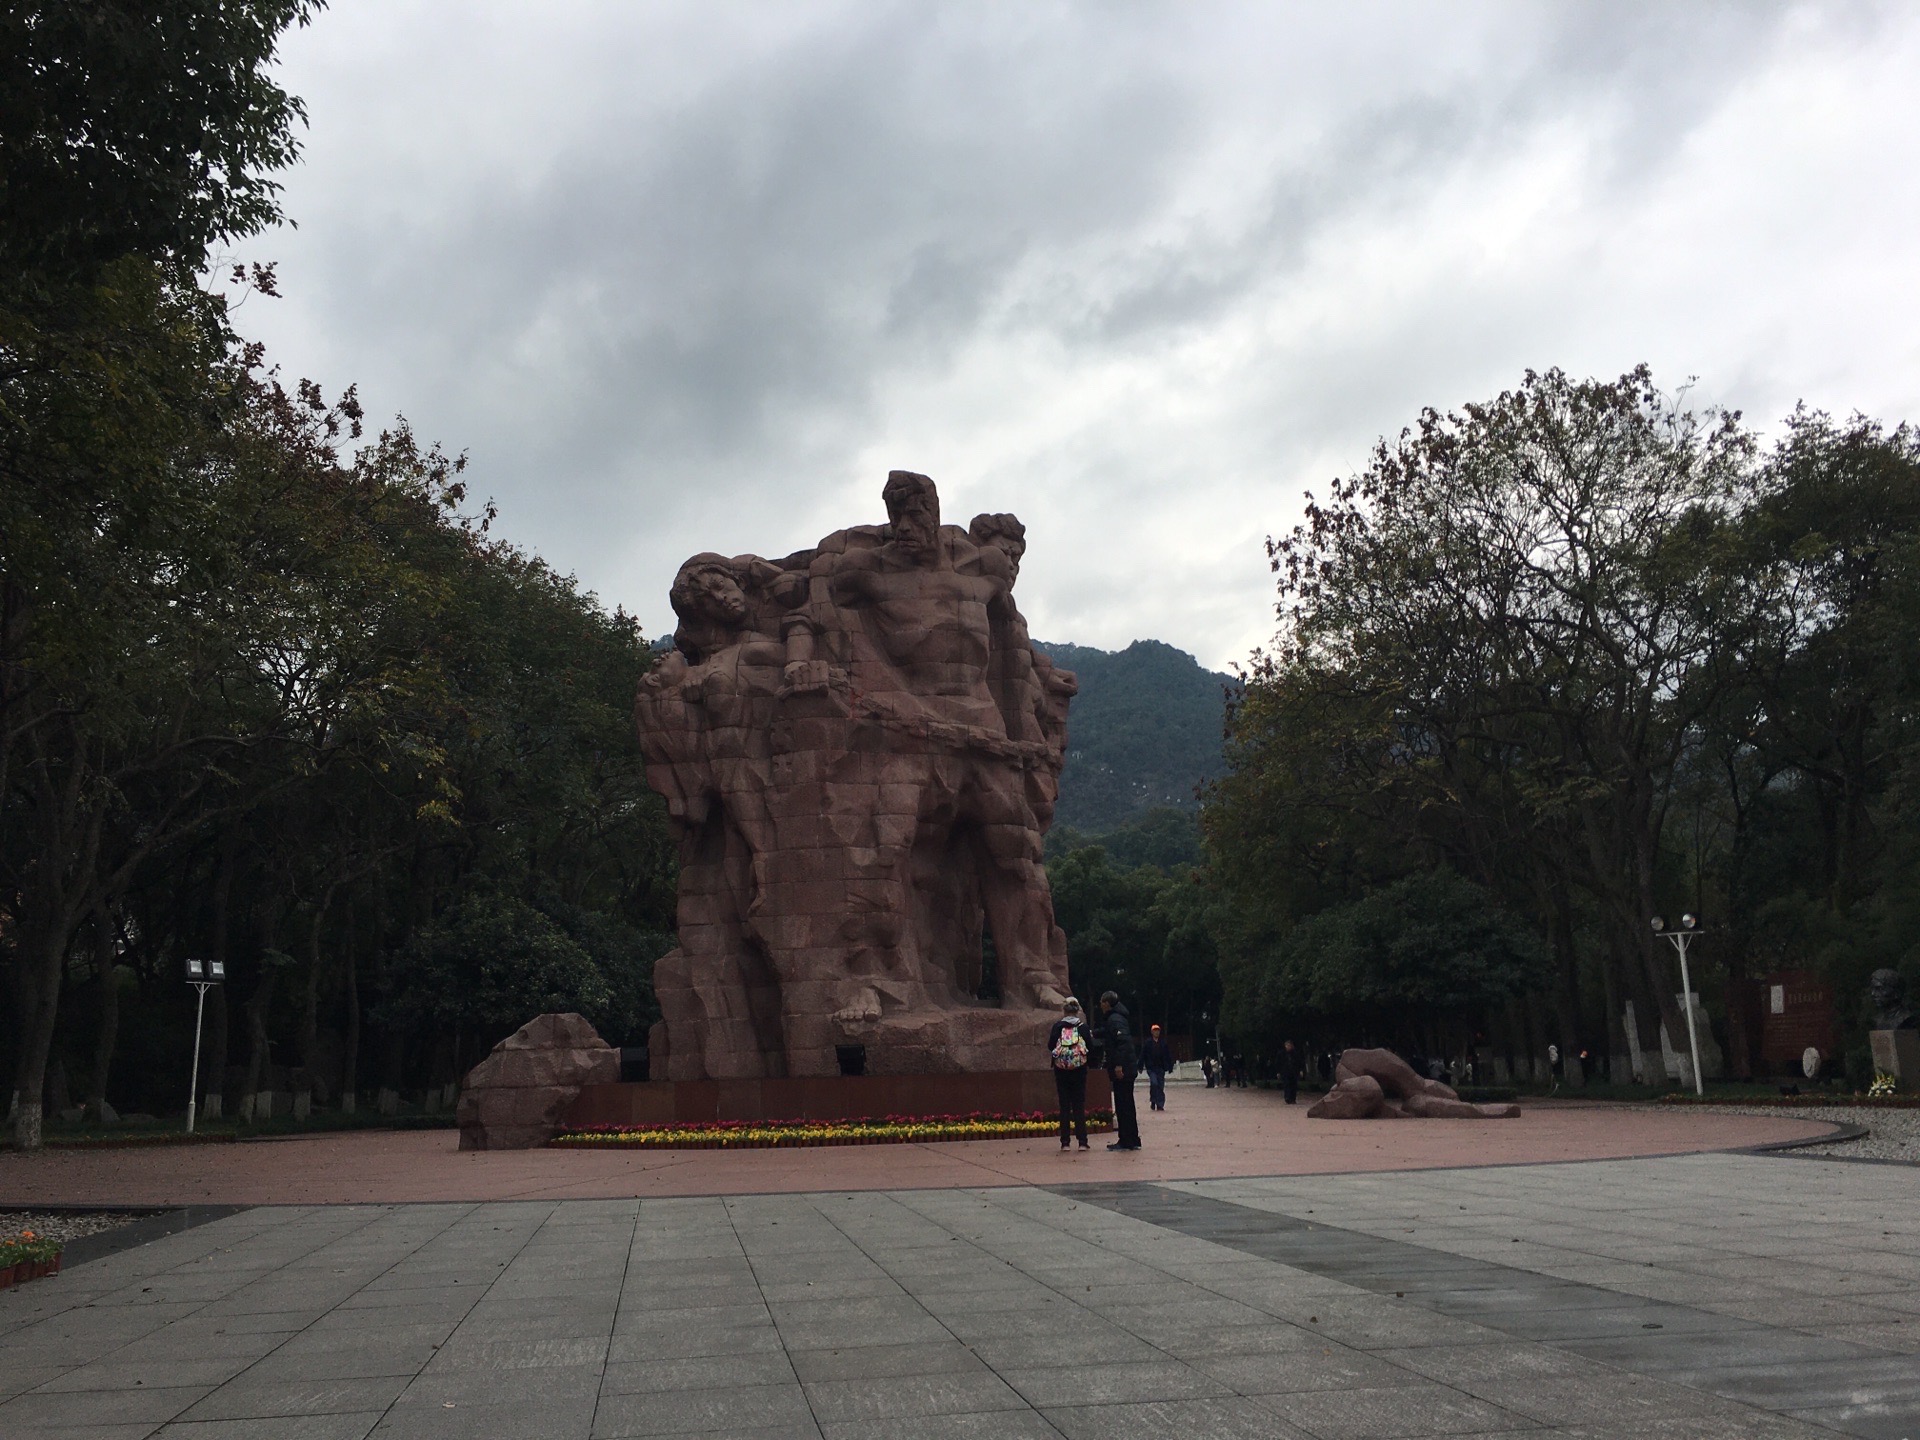 【携程攻略】重庆歌乐山烈士陵园景点,非常庄严的红色革命旅游地，我拍了很多照片，真实反映了那段可歌可泣…